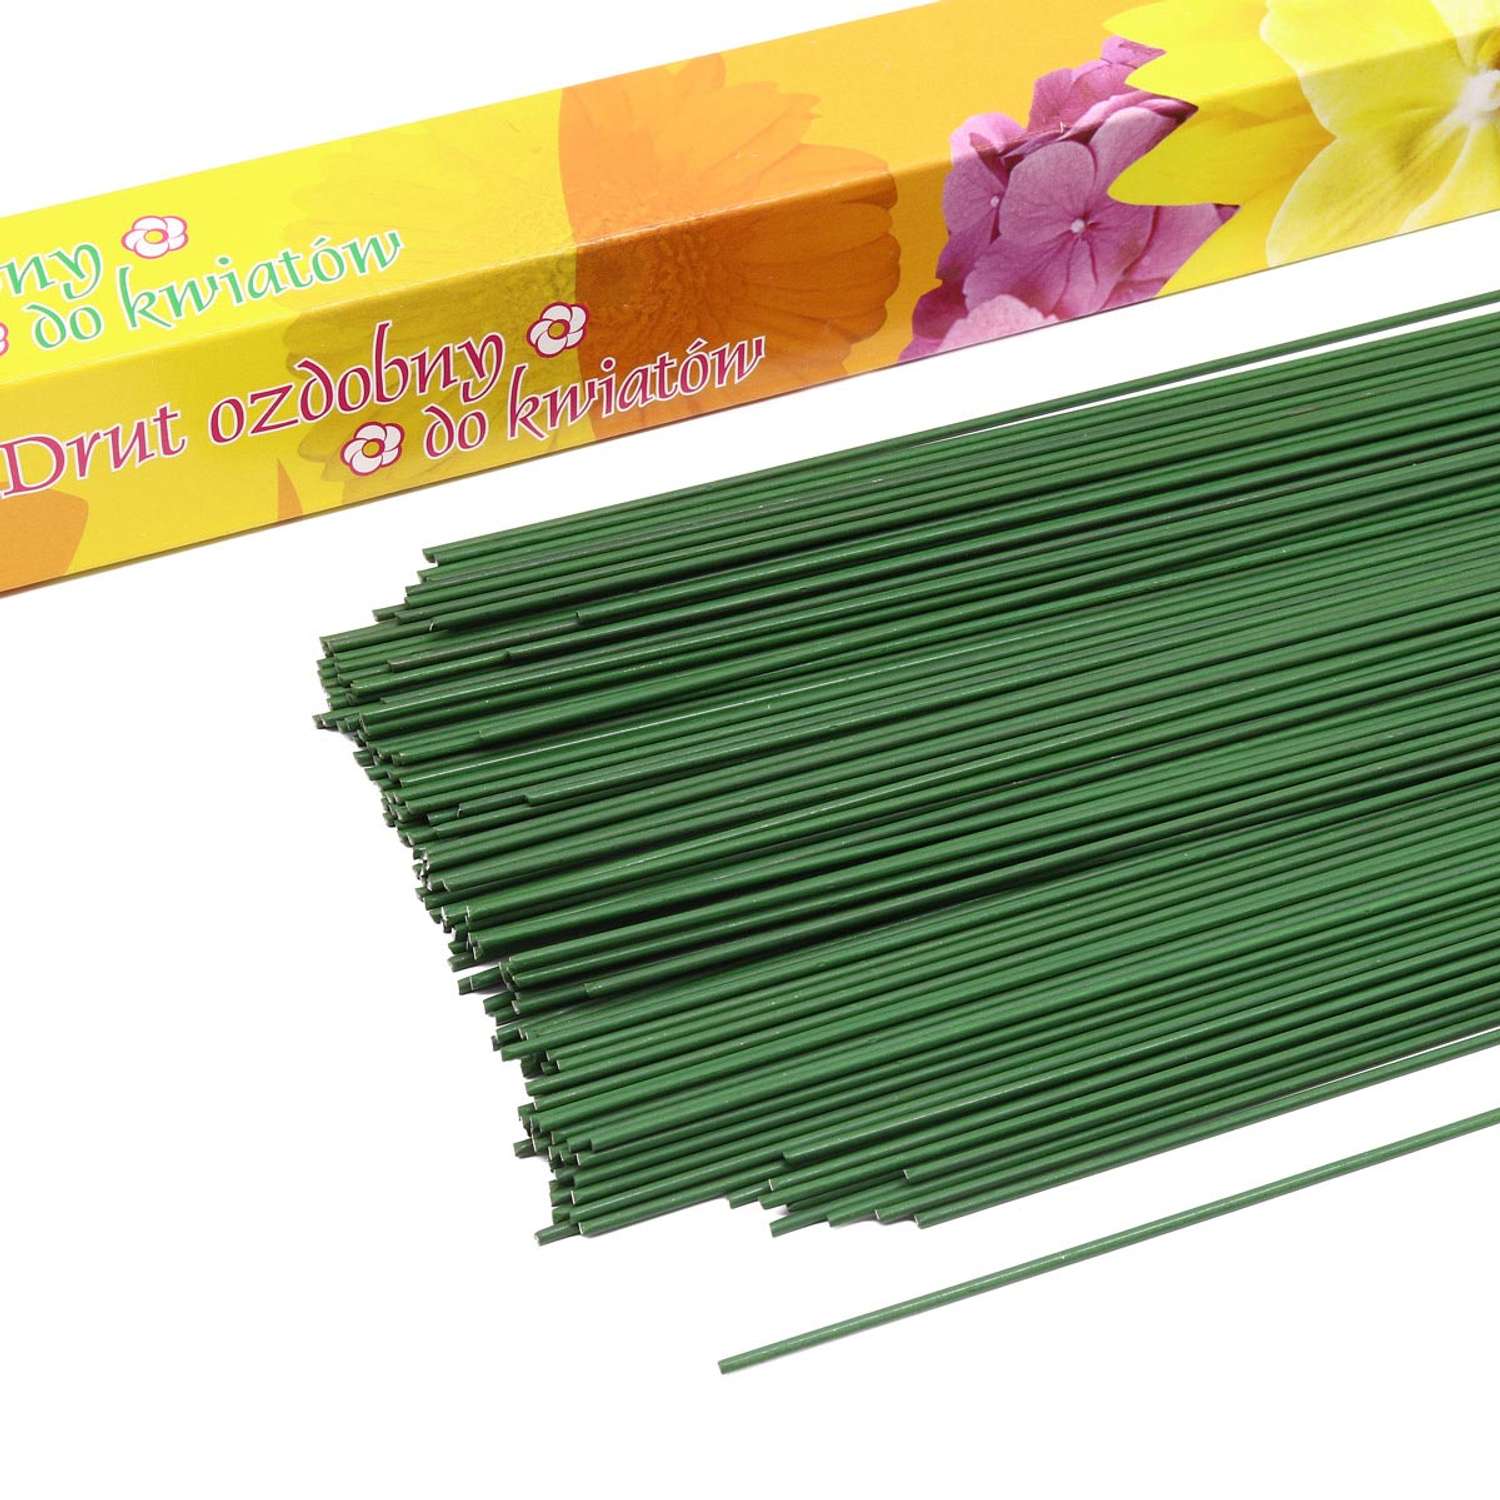 Проволока флористическая Айрис для рукоделия цветов создания композиции плетения каркасов зеленая 1 кг х 1.6 мм - фото 2